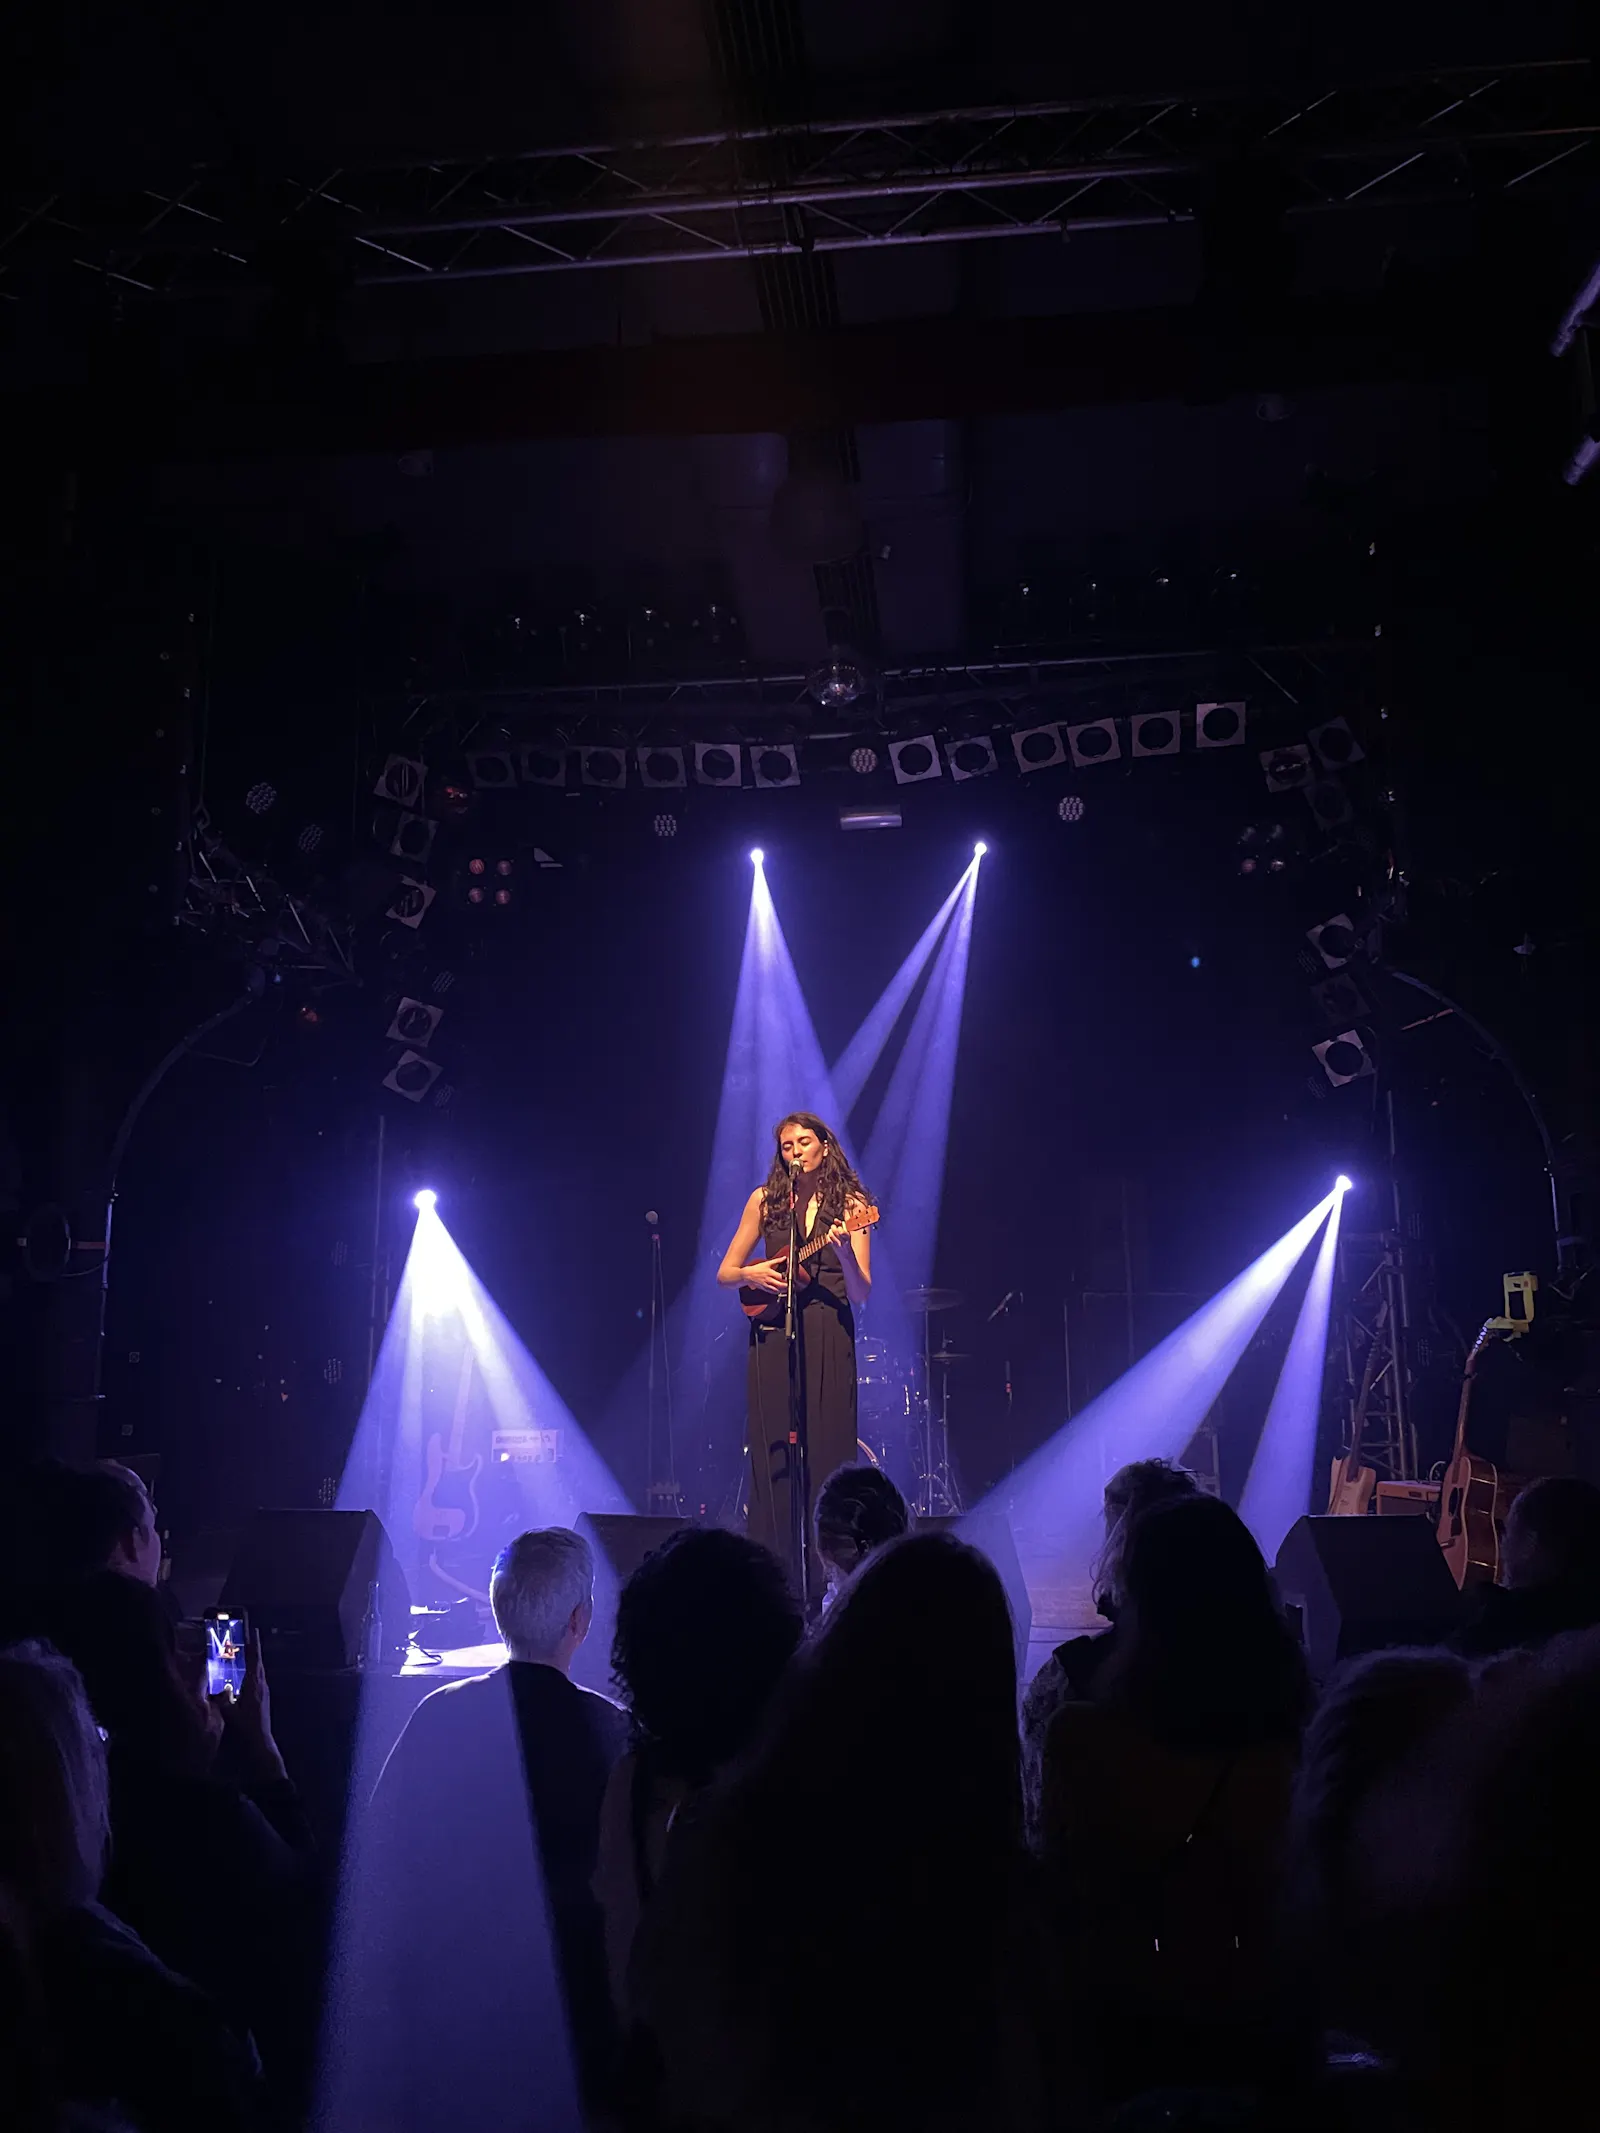 Mina Richman live in Hamburg im Knust. Musikerin im Scheinwerferlicht. Aus dem Publikum heraus fotografiert. 

Credit: Caro Schwarz